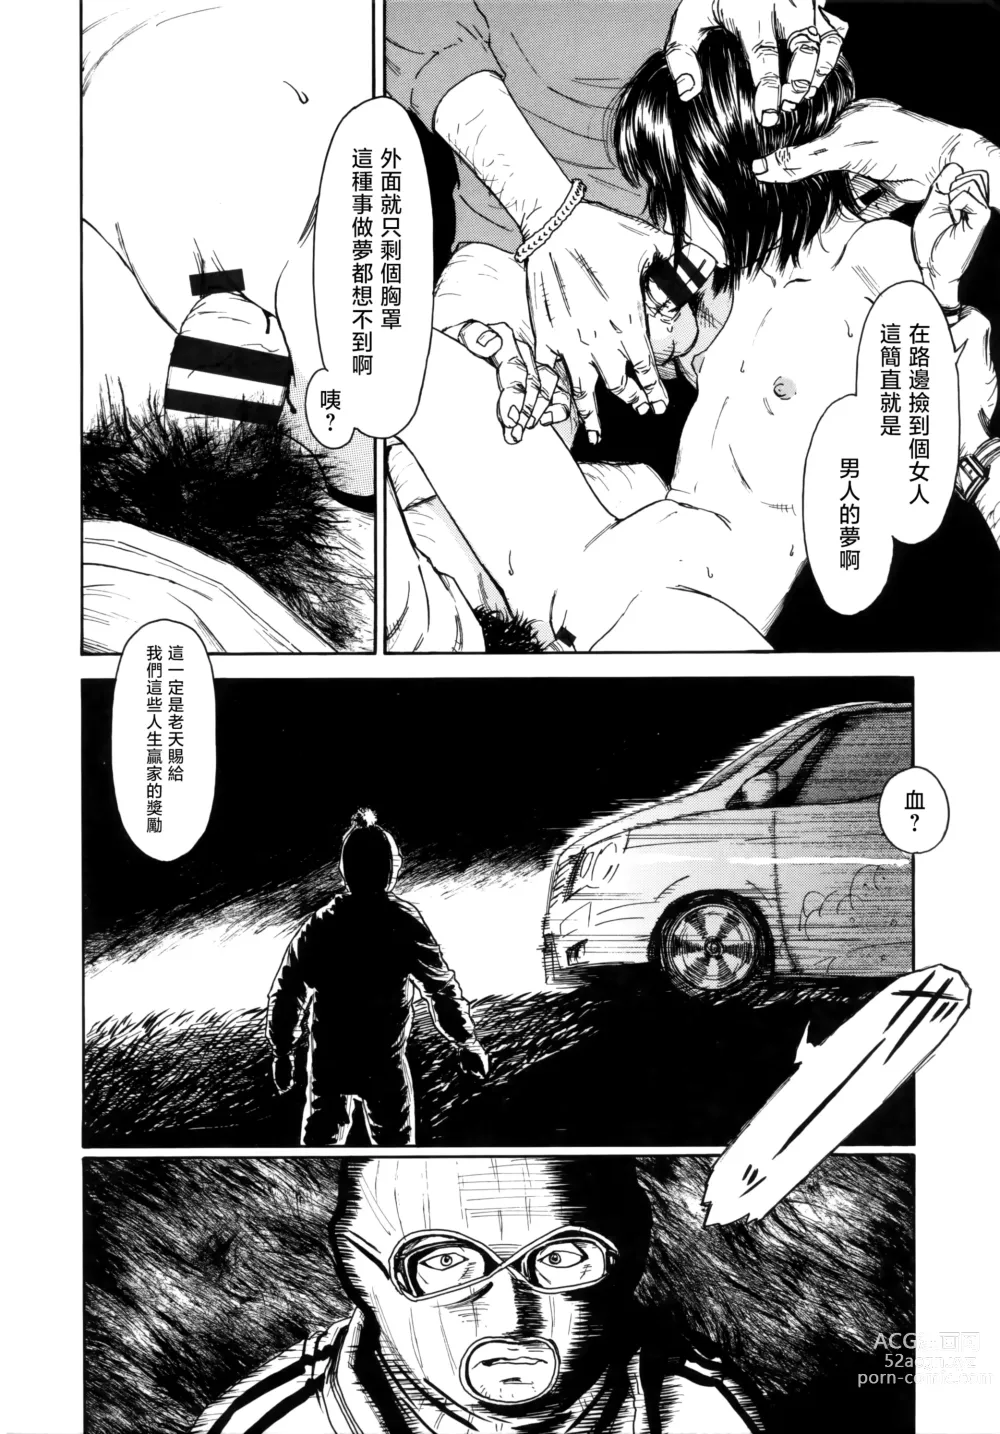 Page 22 of manga Ooki na Nanika no Ki no Shita de